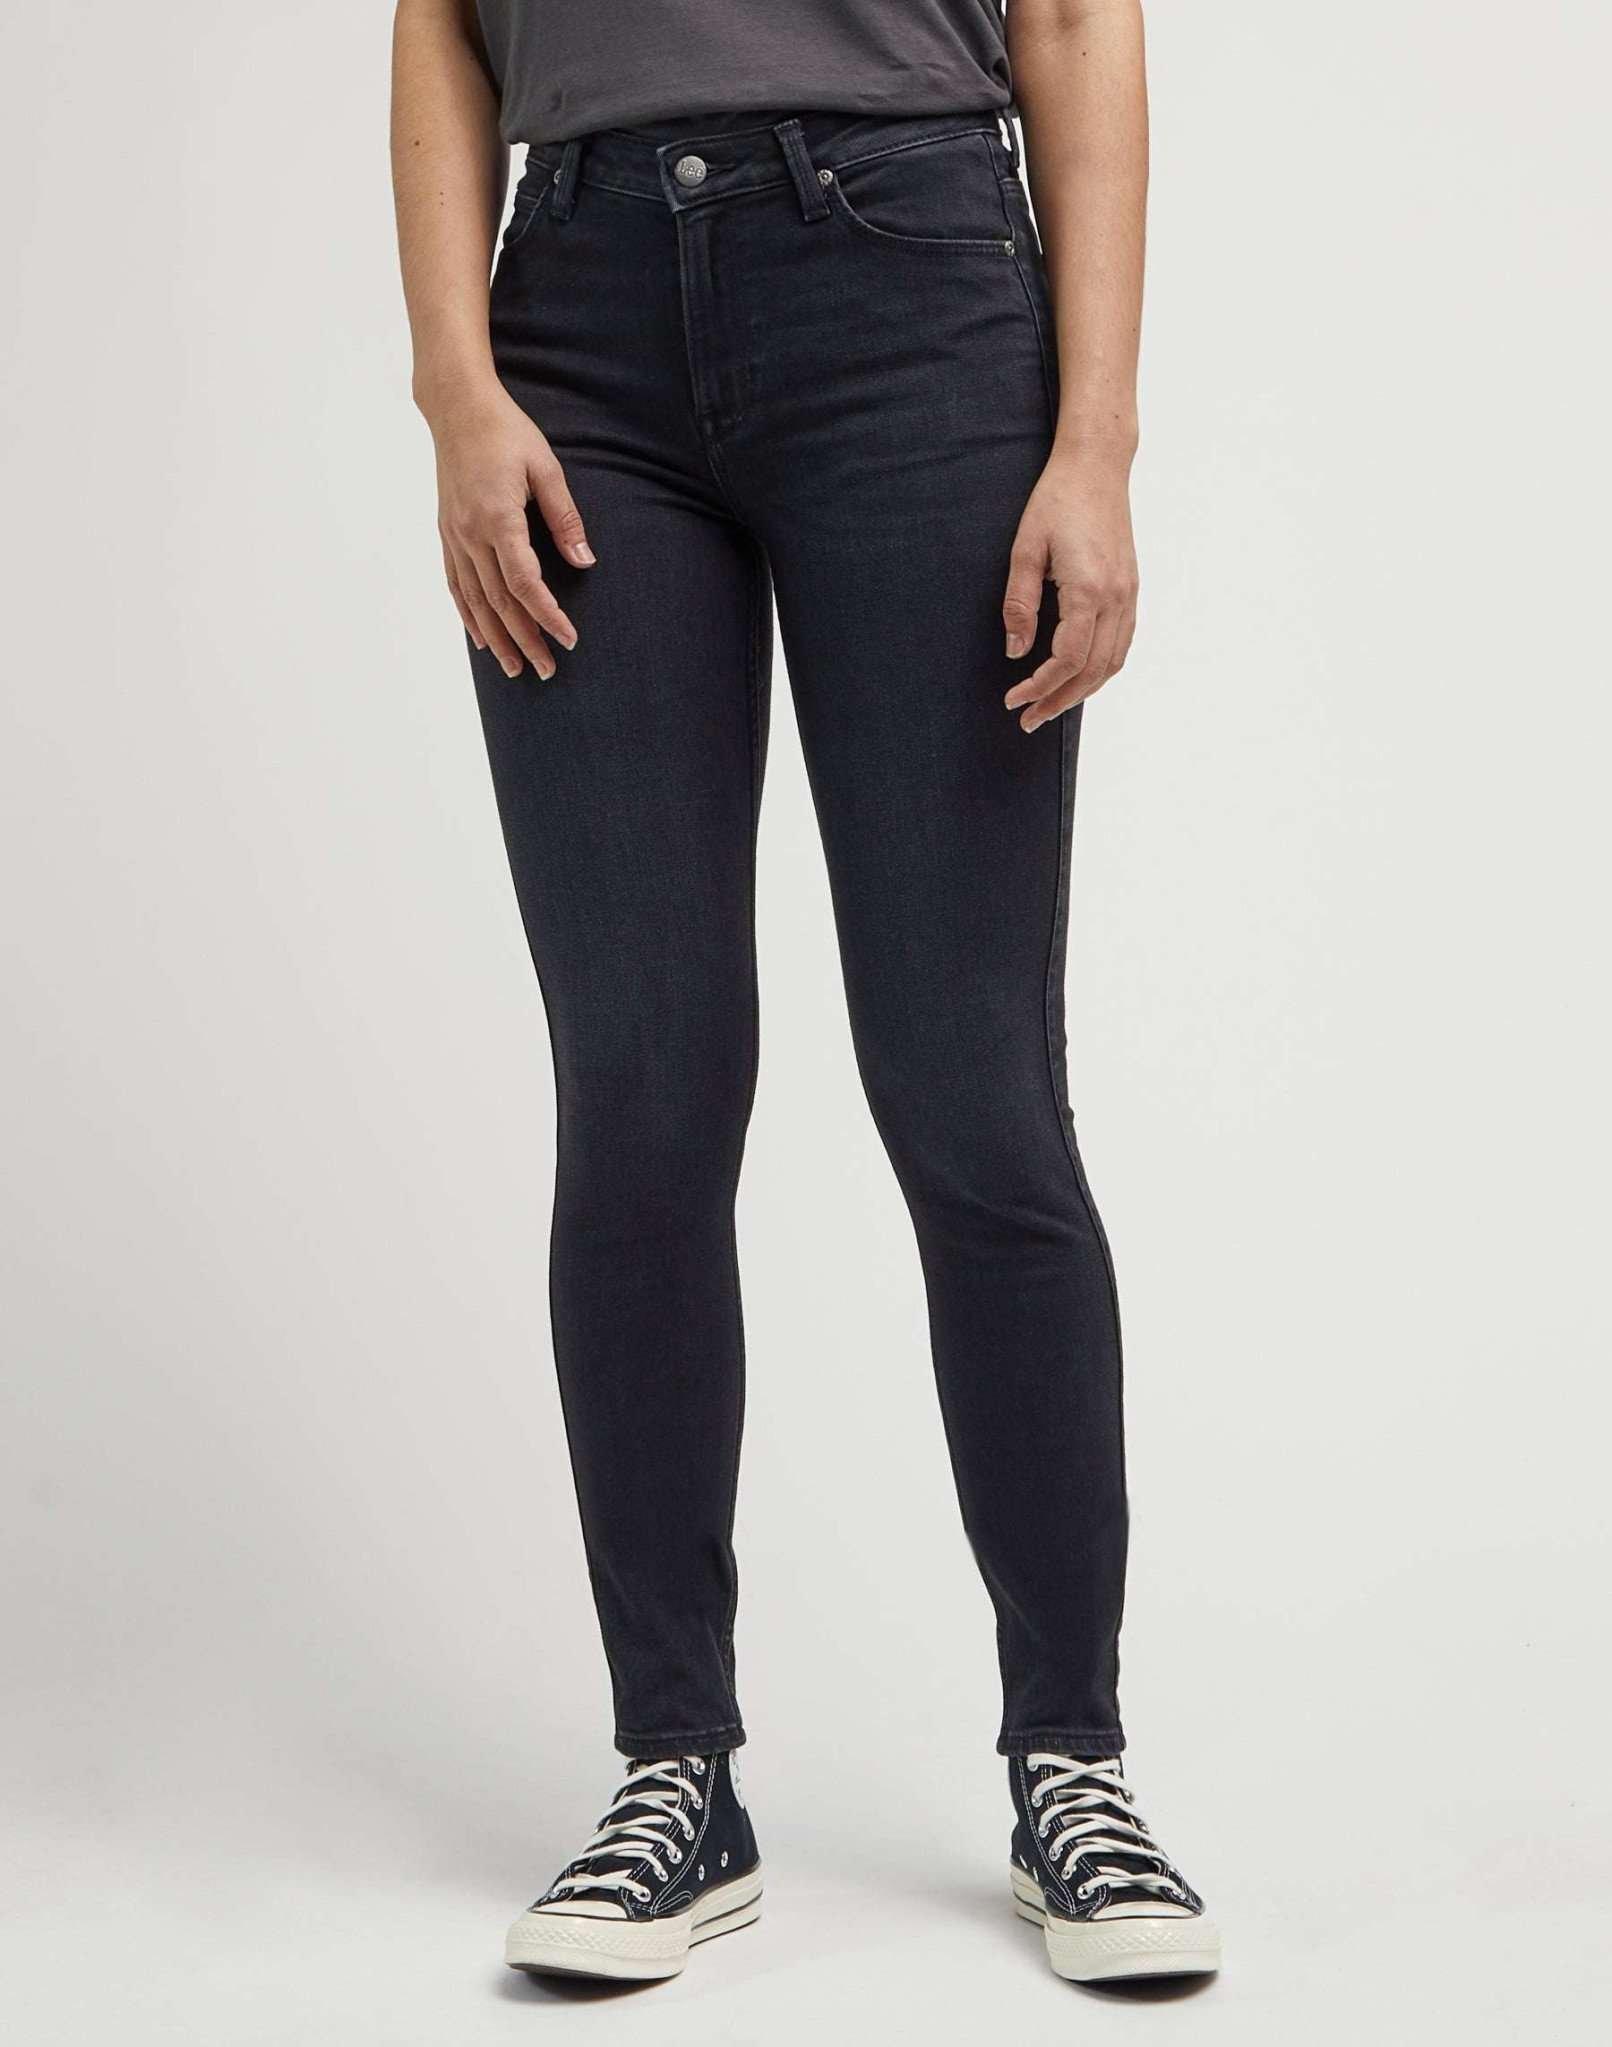 Jeans Skinny Fit Scarlett High Damen Schwarz L33/W27 von Lee